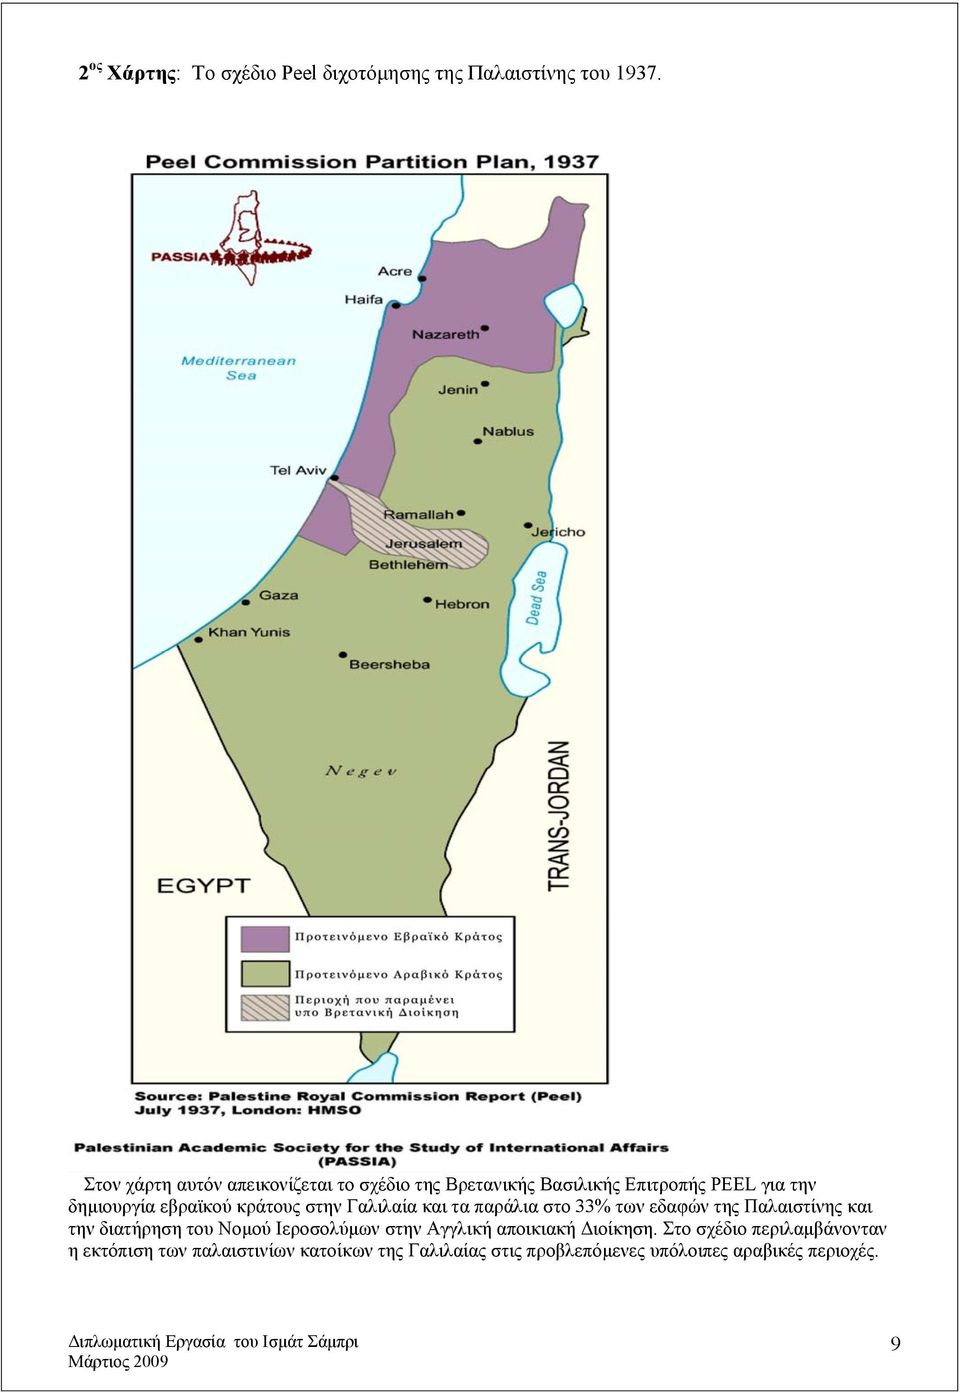 κράτους στην Γαλιλαία και τα παράλια στο 33% των εδαφών της Παλαιστίνης και την διατήρηση του Νομού Ιεροσολύμων